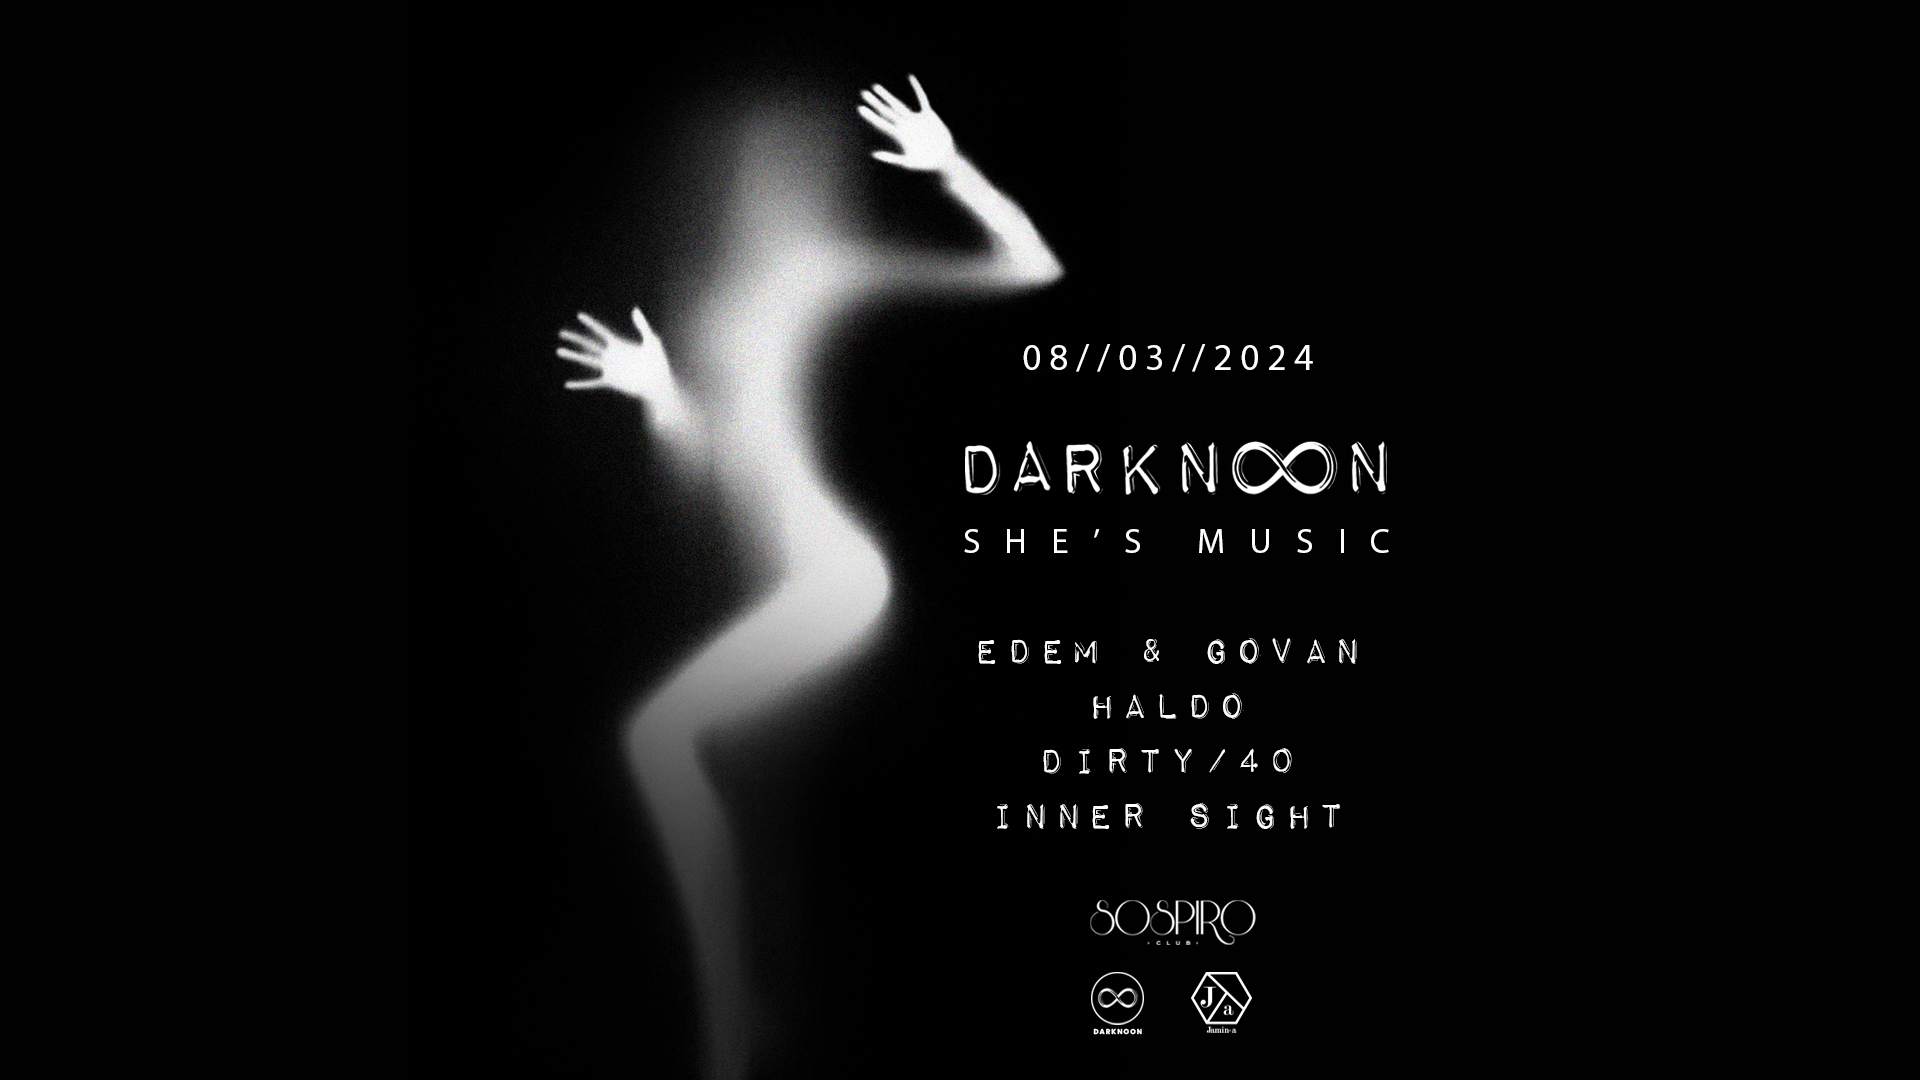 Darknoon, She's Music - フライヤー裏